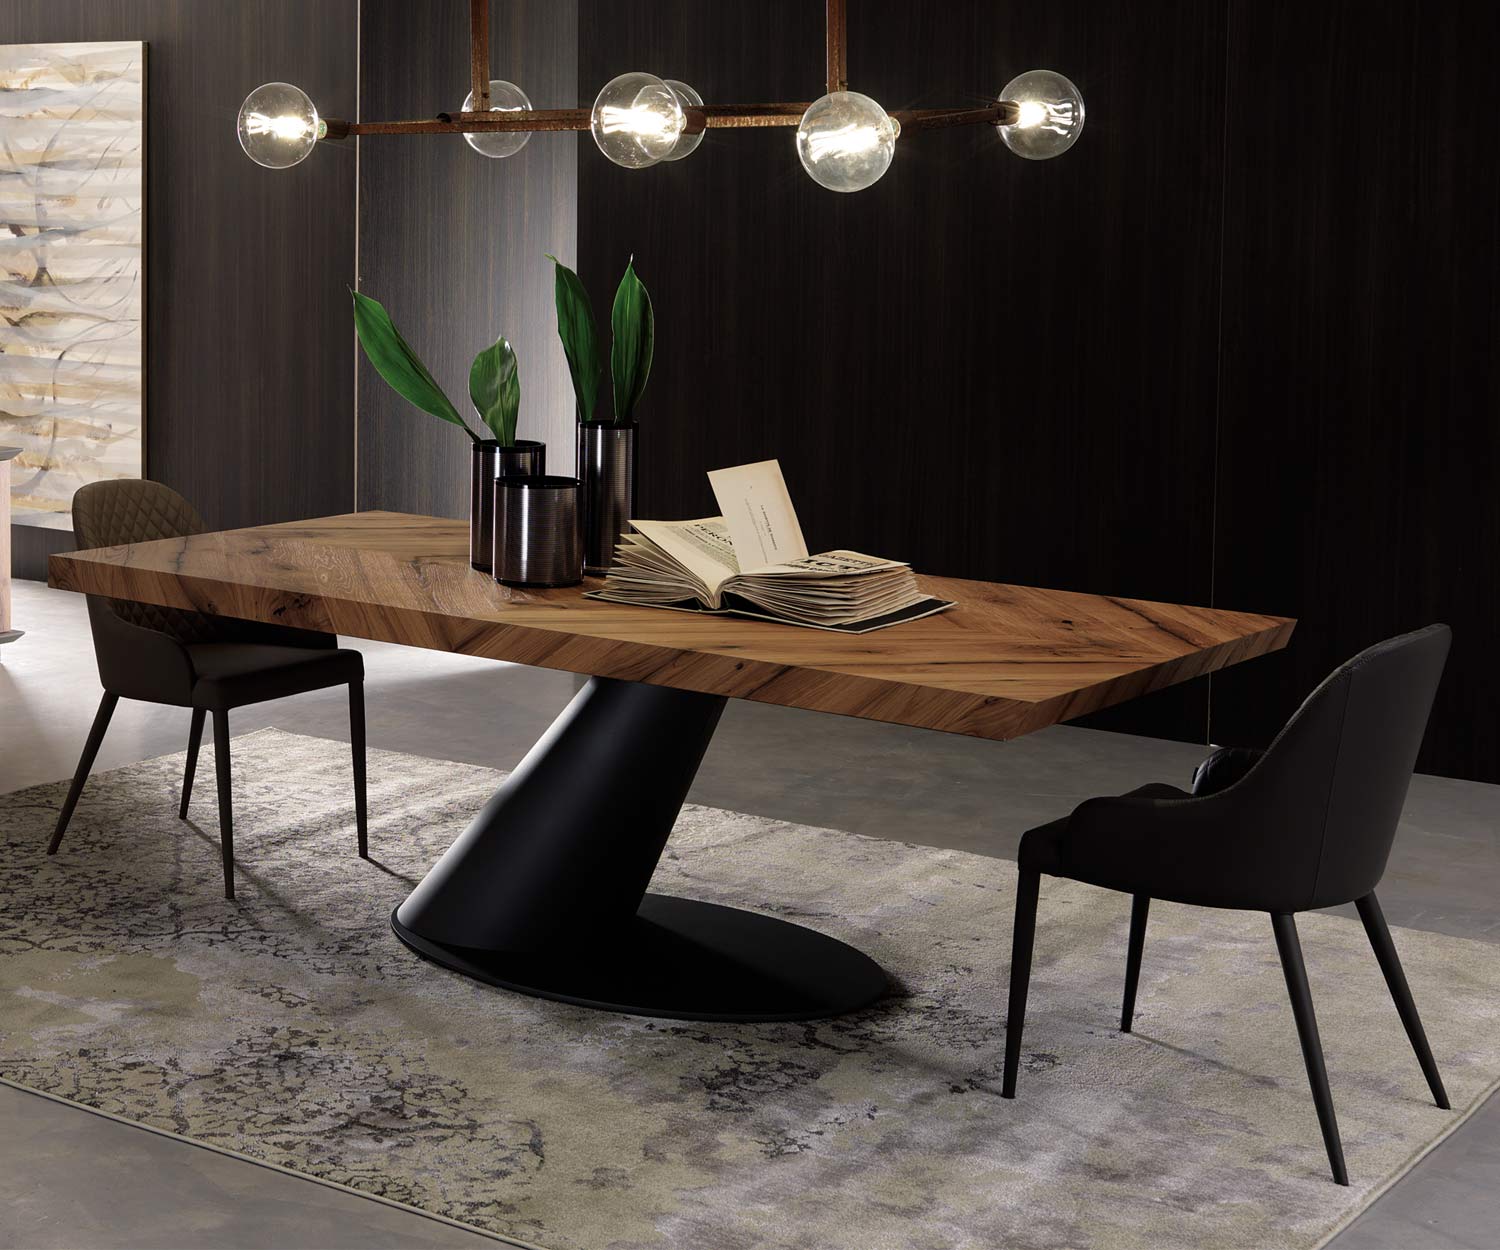 Moderner Ozzio Design Stuhl Betta Leder Schwarz im Esszimmer am Tisch platziert